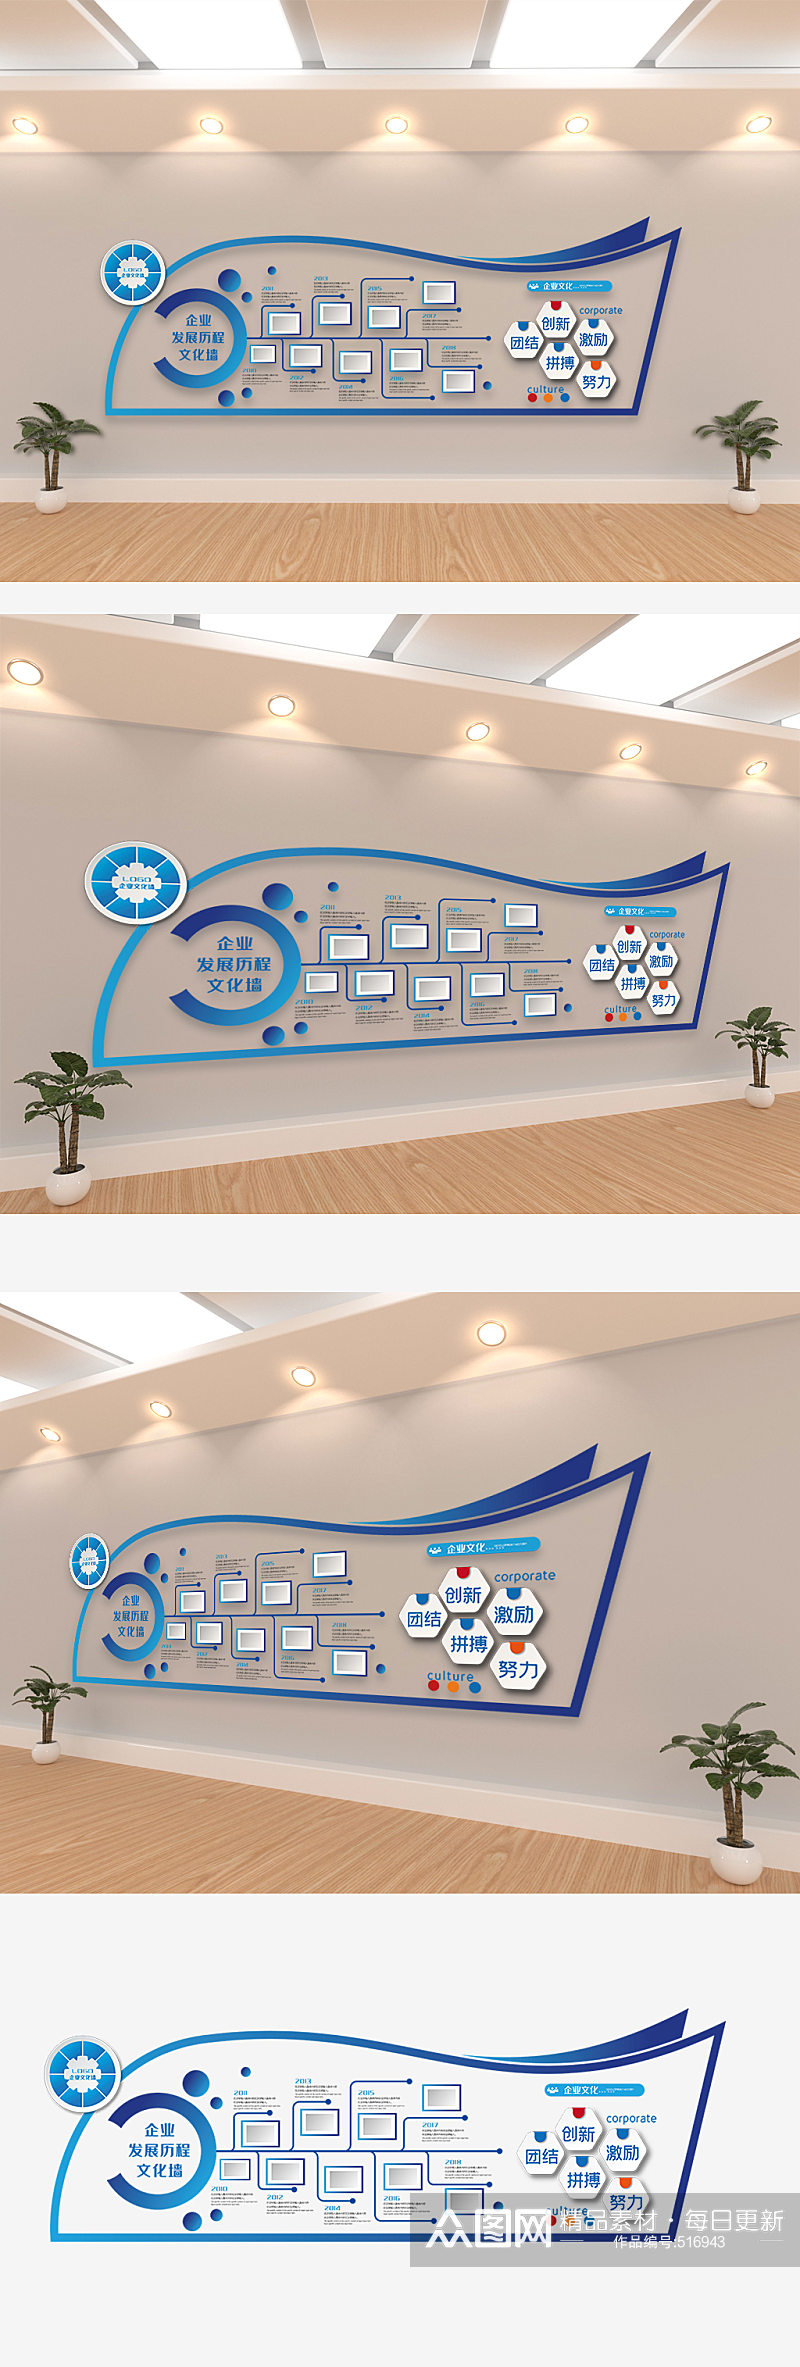 高端蓝色企业办公室宣传文化墙效果设计图素材